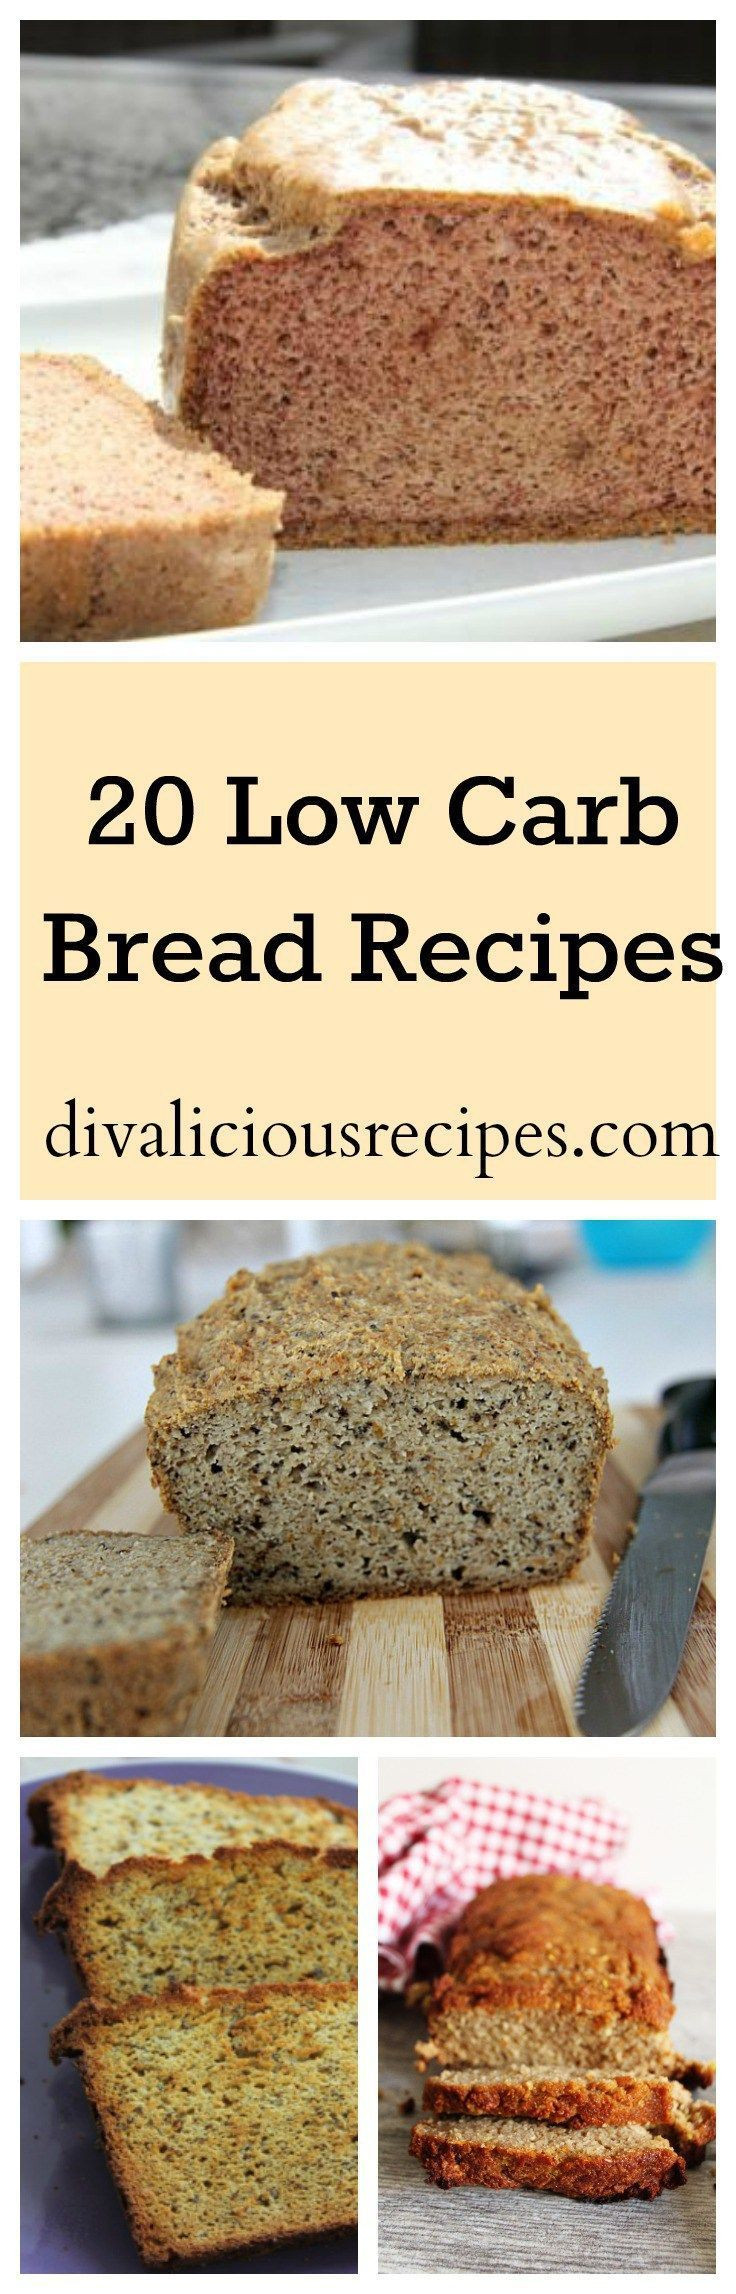 Low Carb Bread Recipes Healthy
 20 Low Carb Bread Recipes